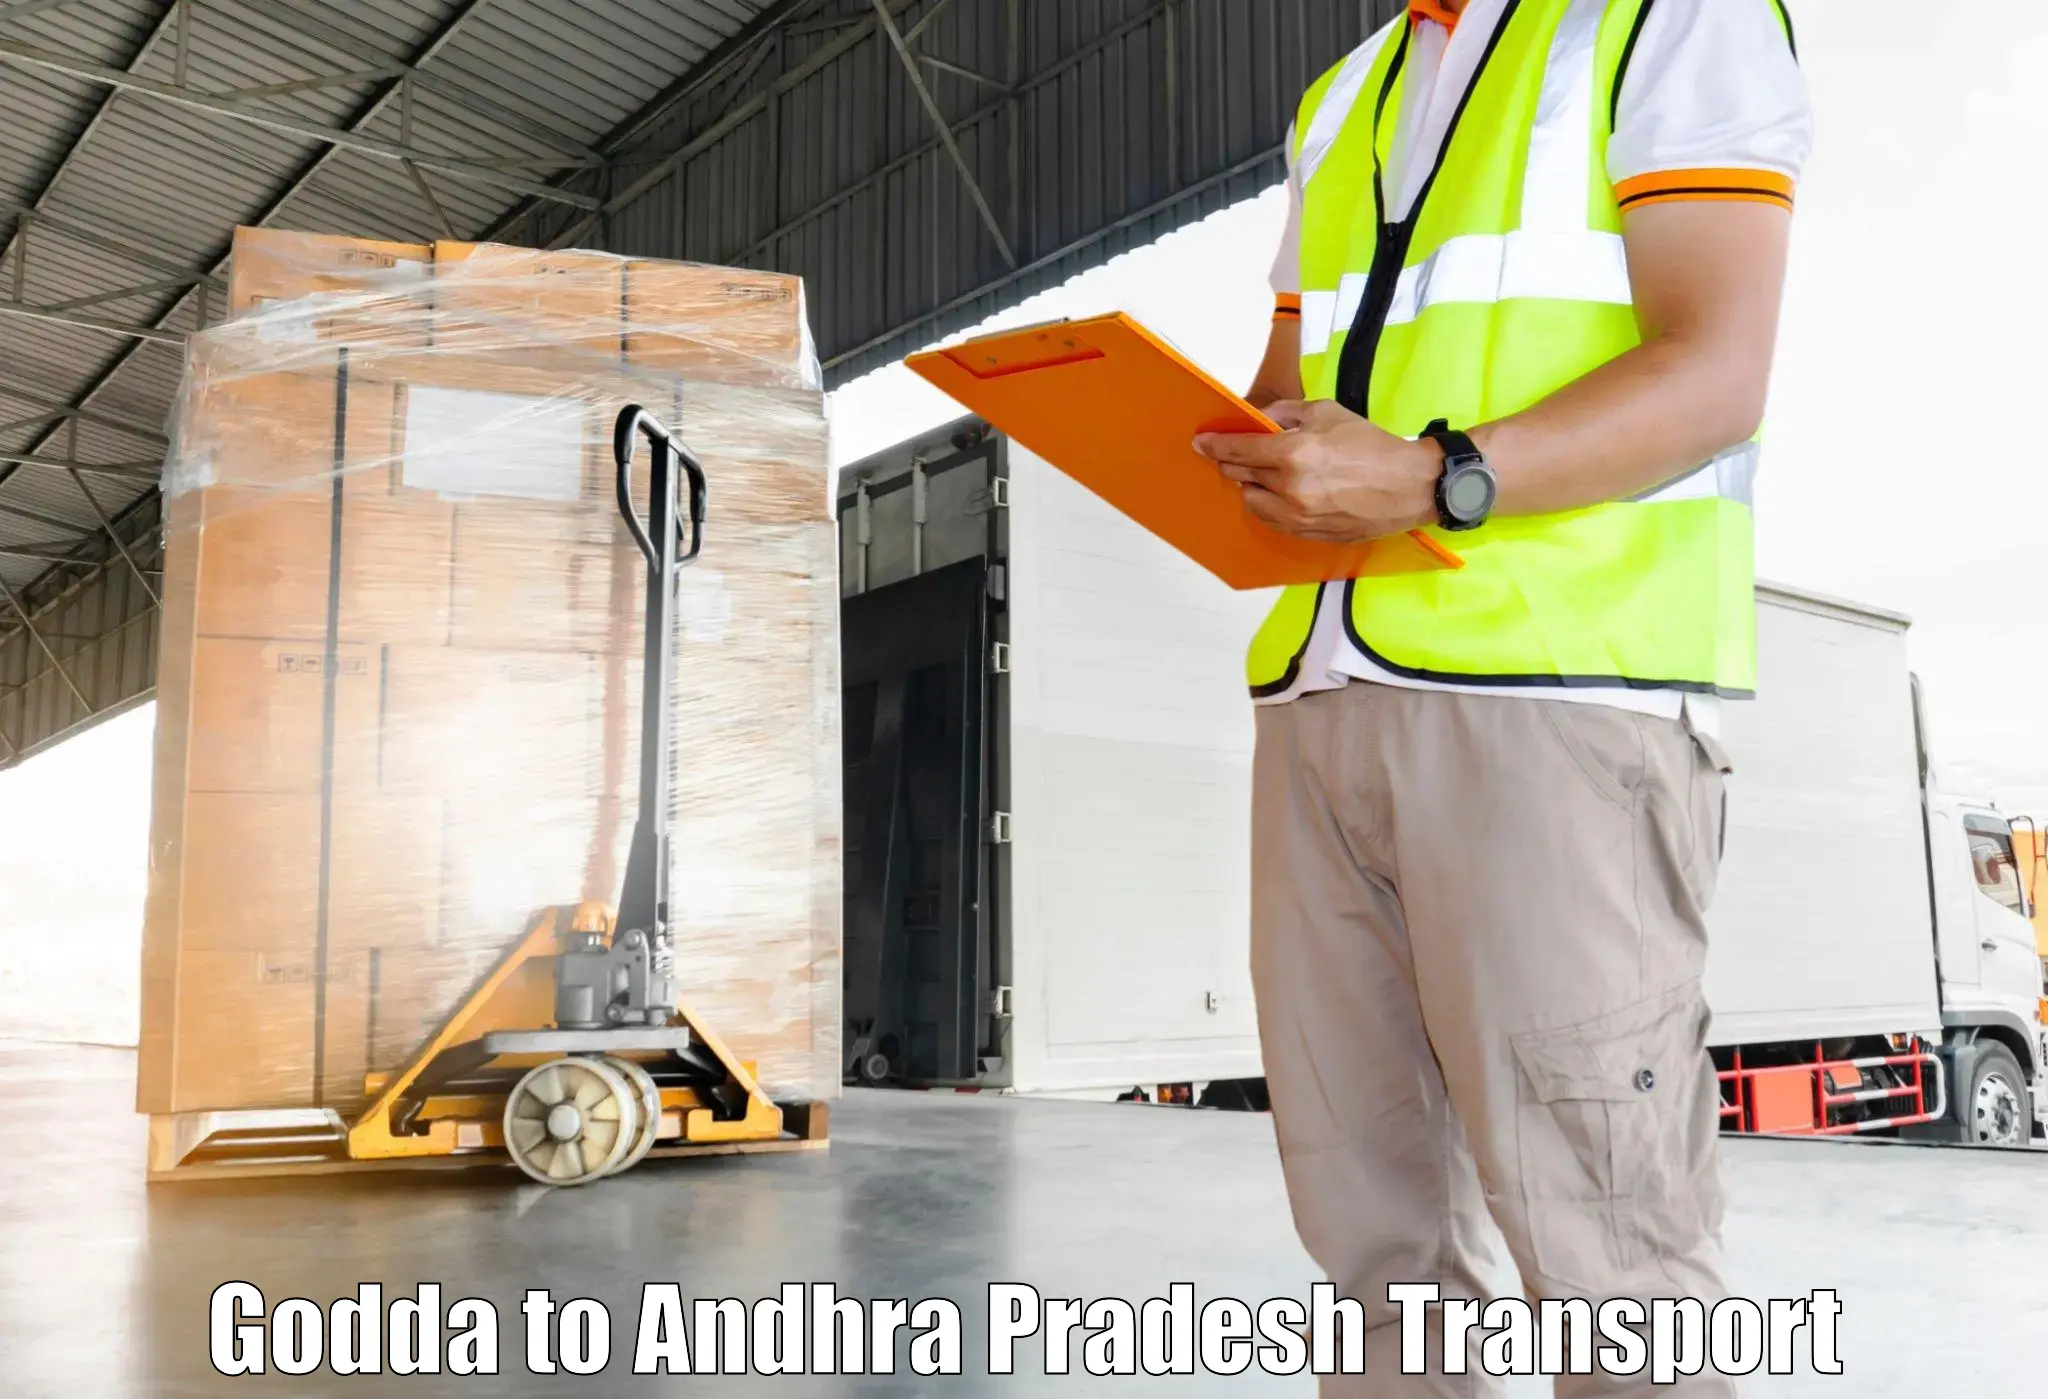 Truck transport companies in India Godda to Puttur Tirupati